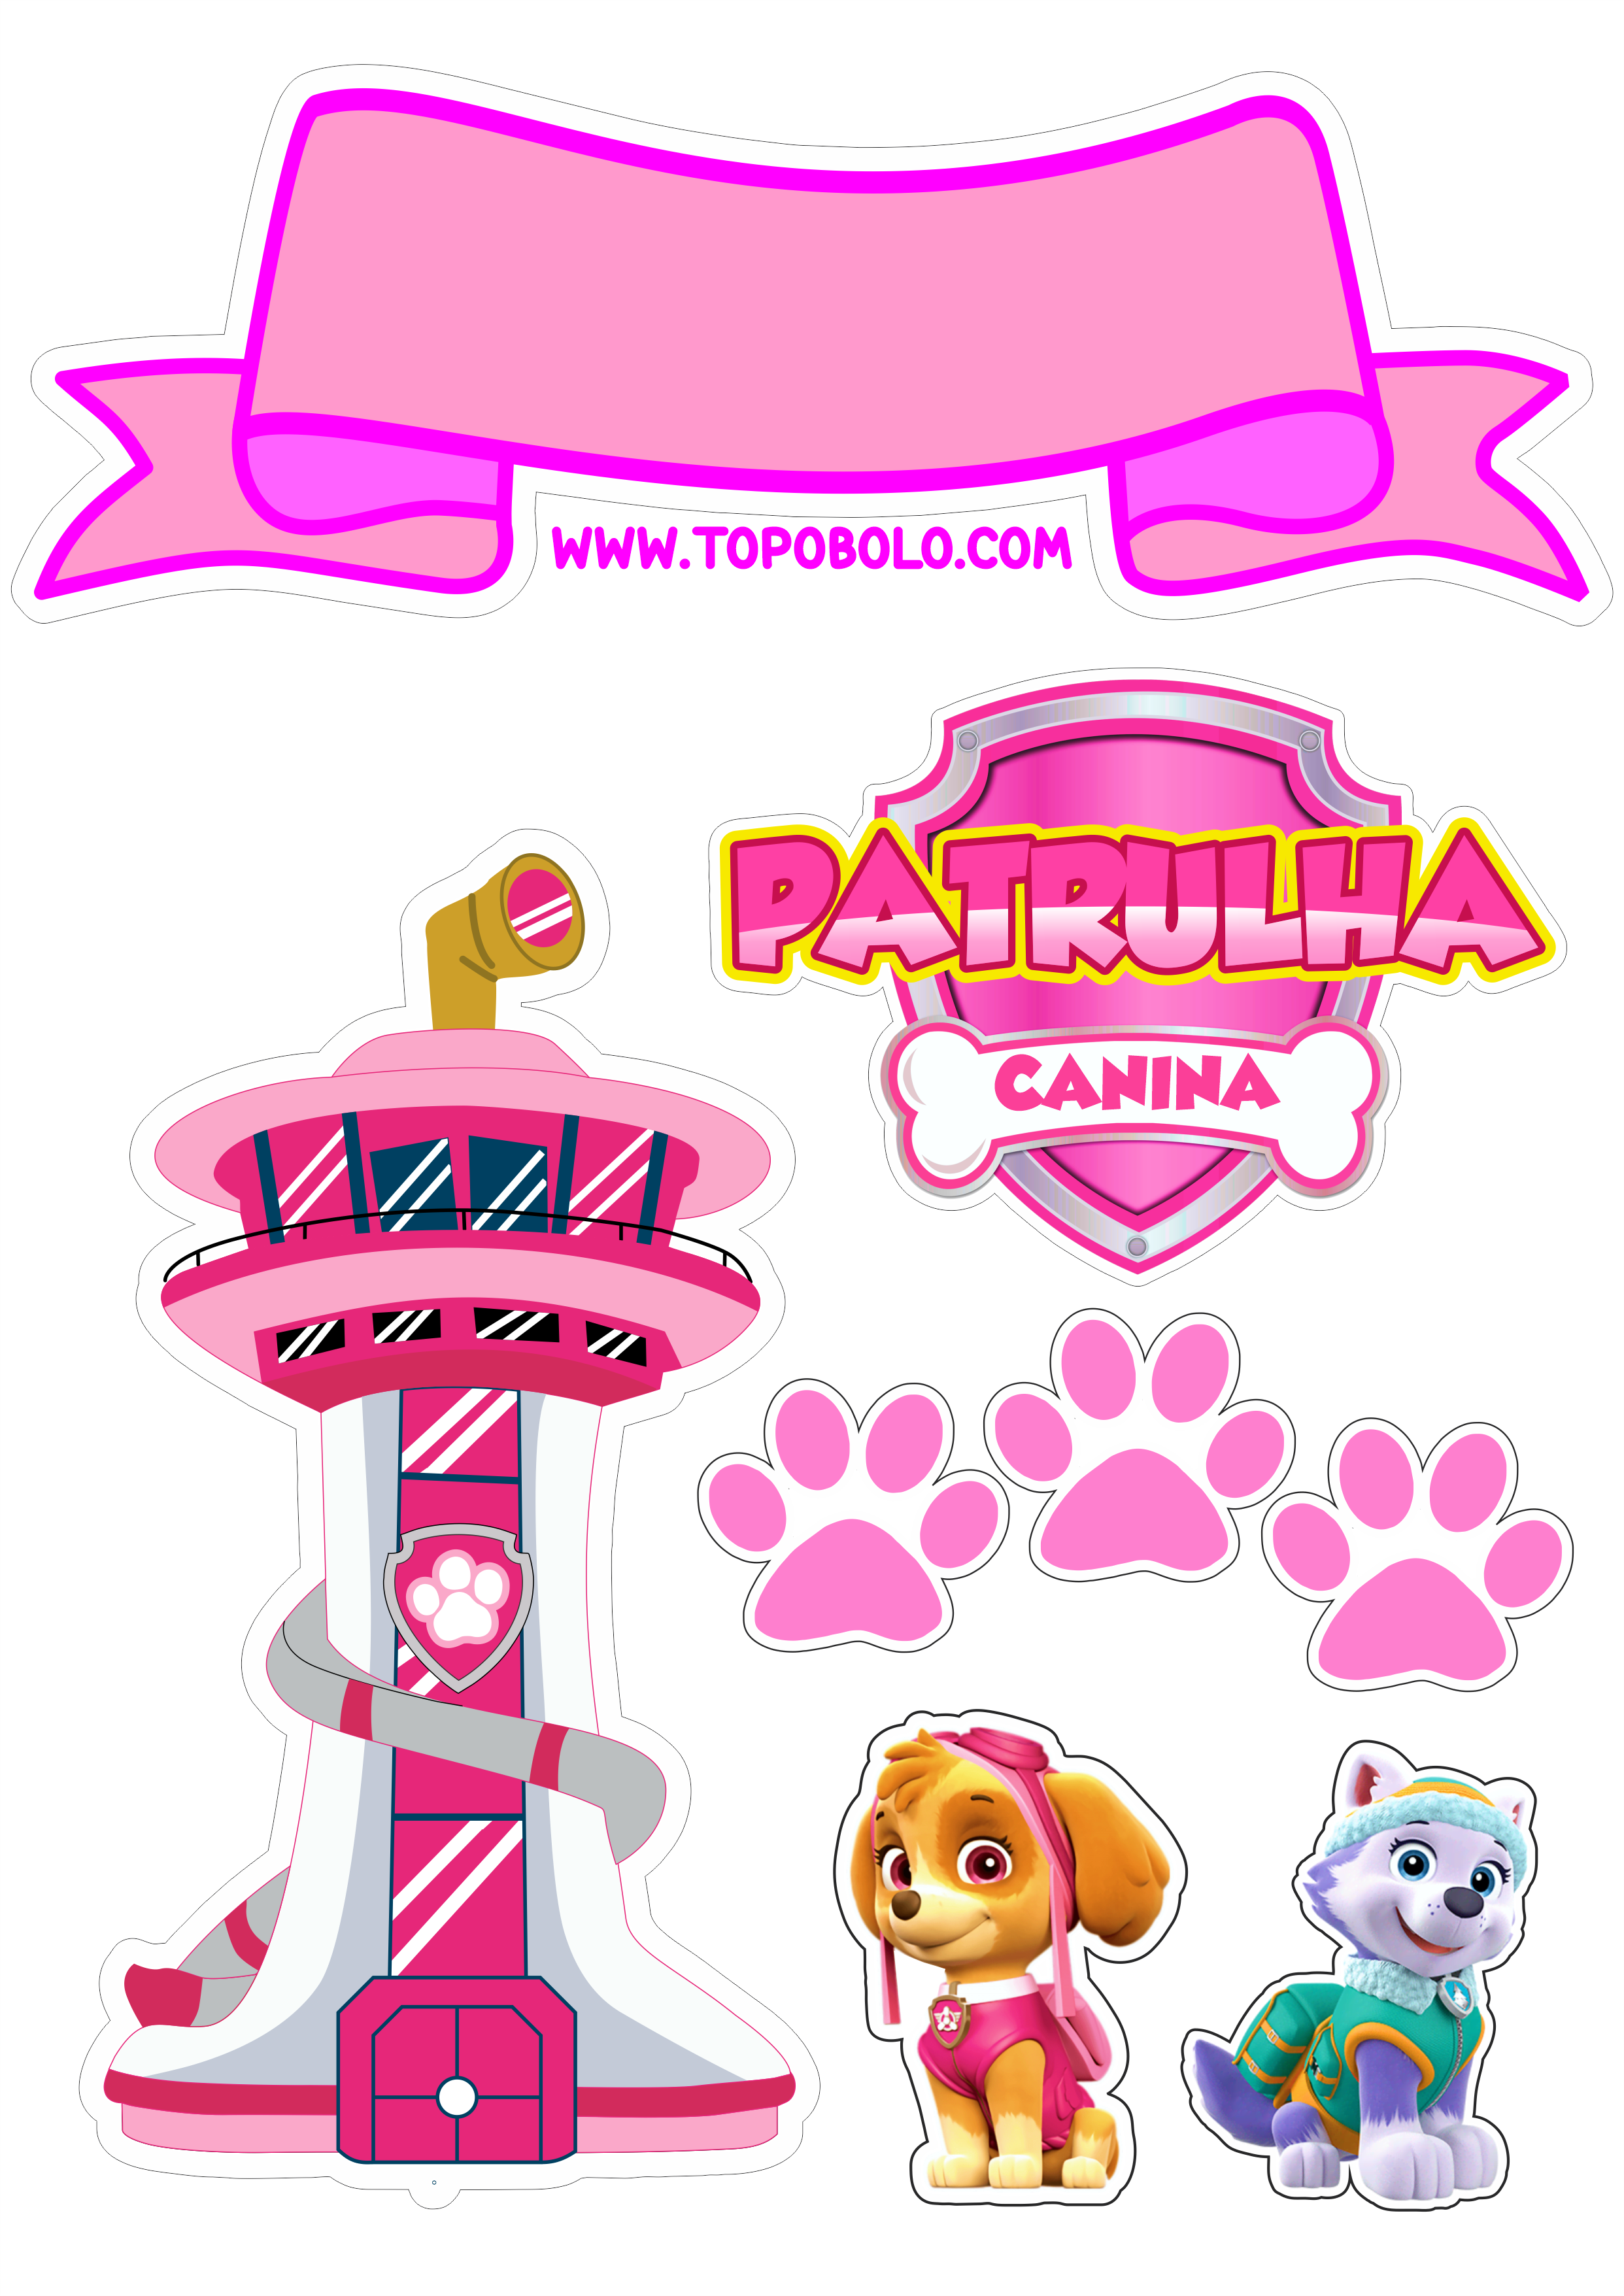 Topo de bolo para imprimir patrulha canina rosa Skye everest desenho infantil animação aniversário personalizado torre download png